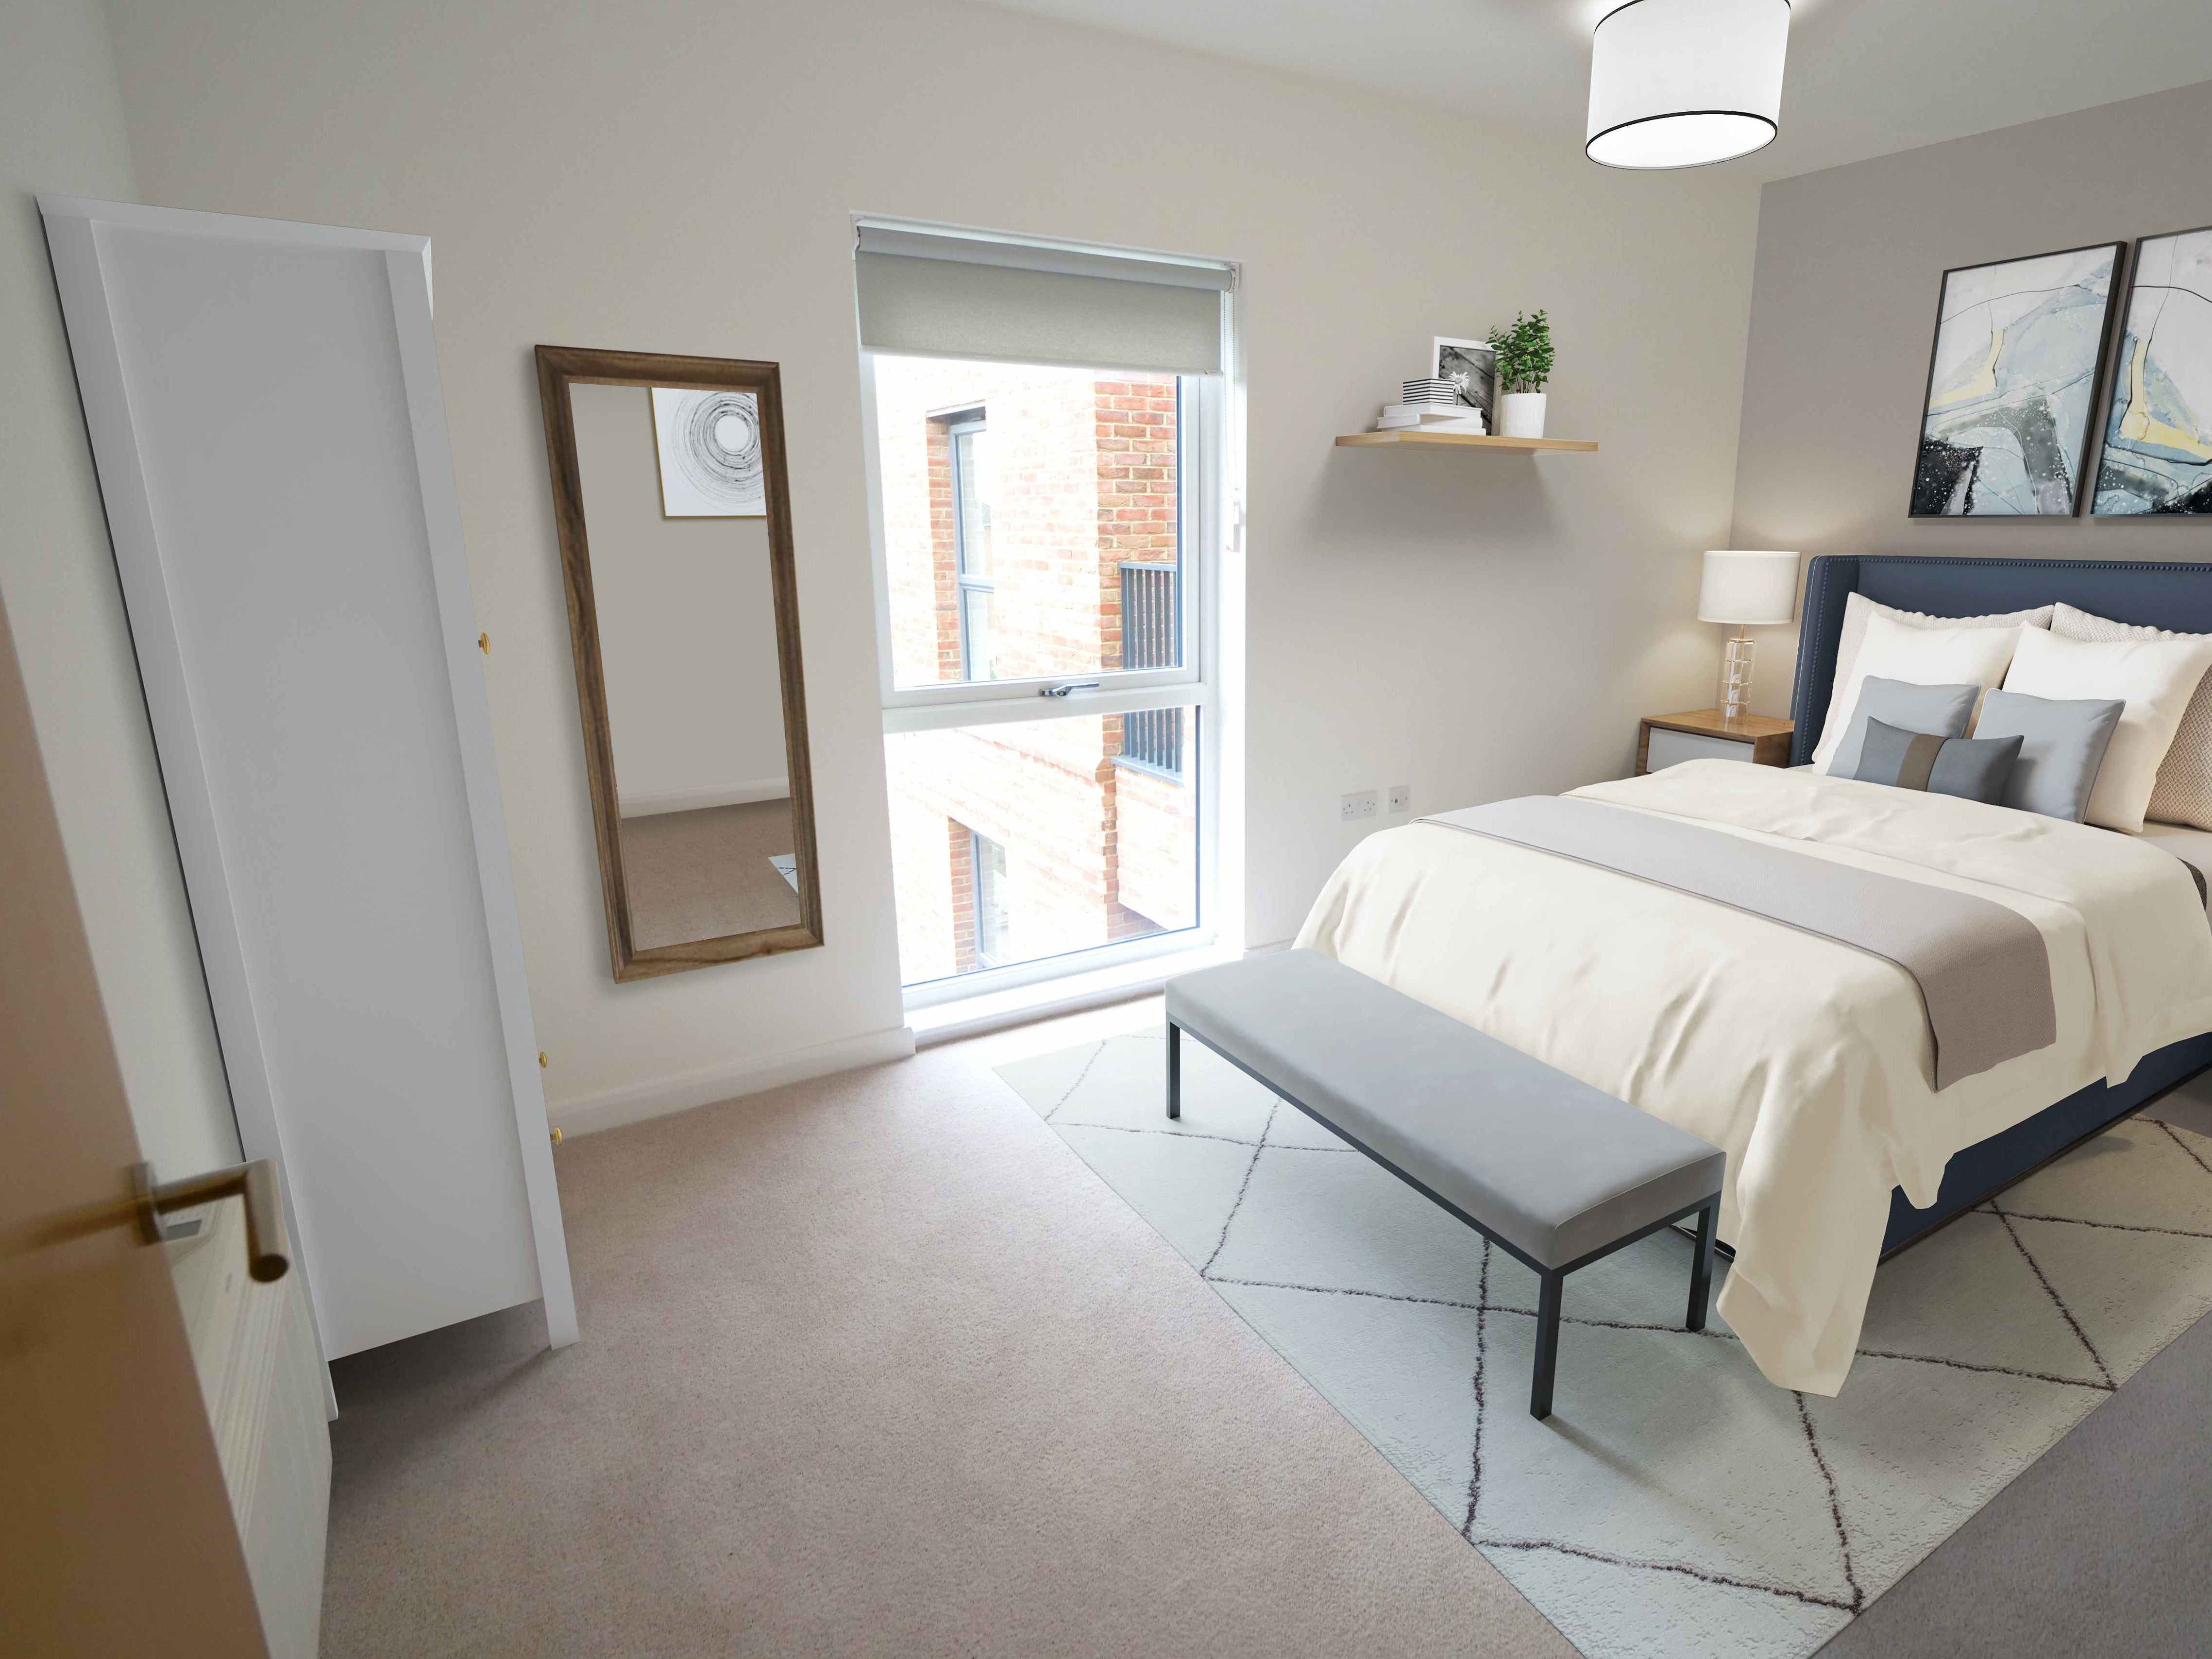 Horlicks Quarter - plot 363 interior furnishings bedroom